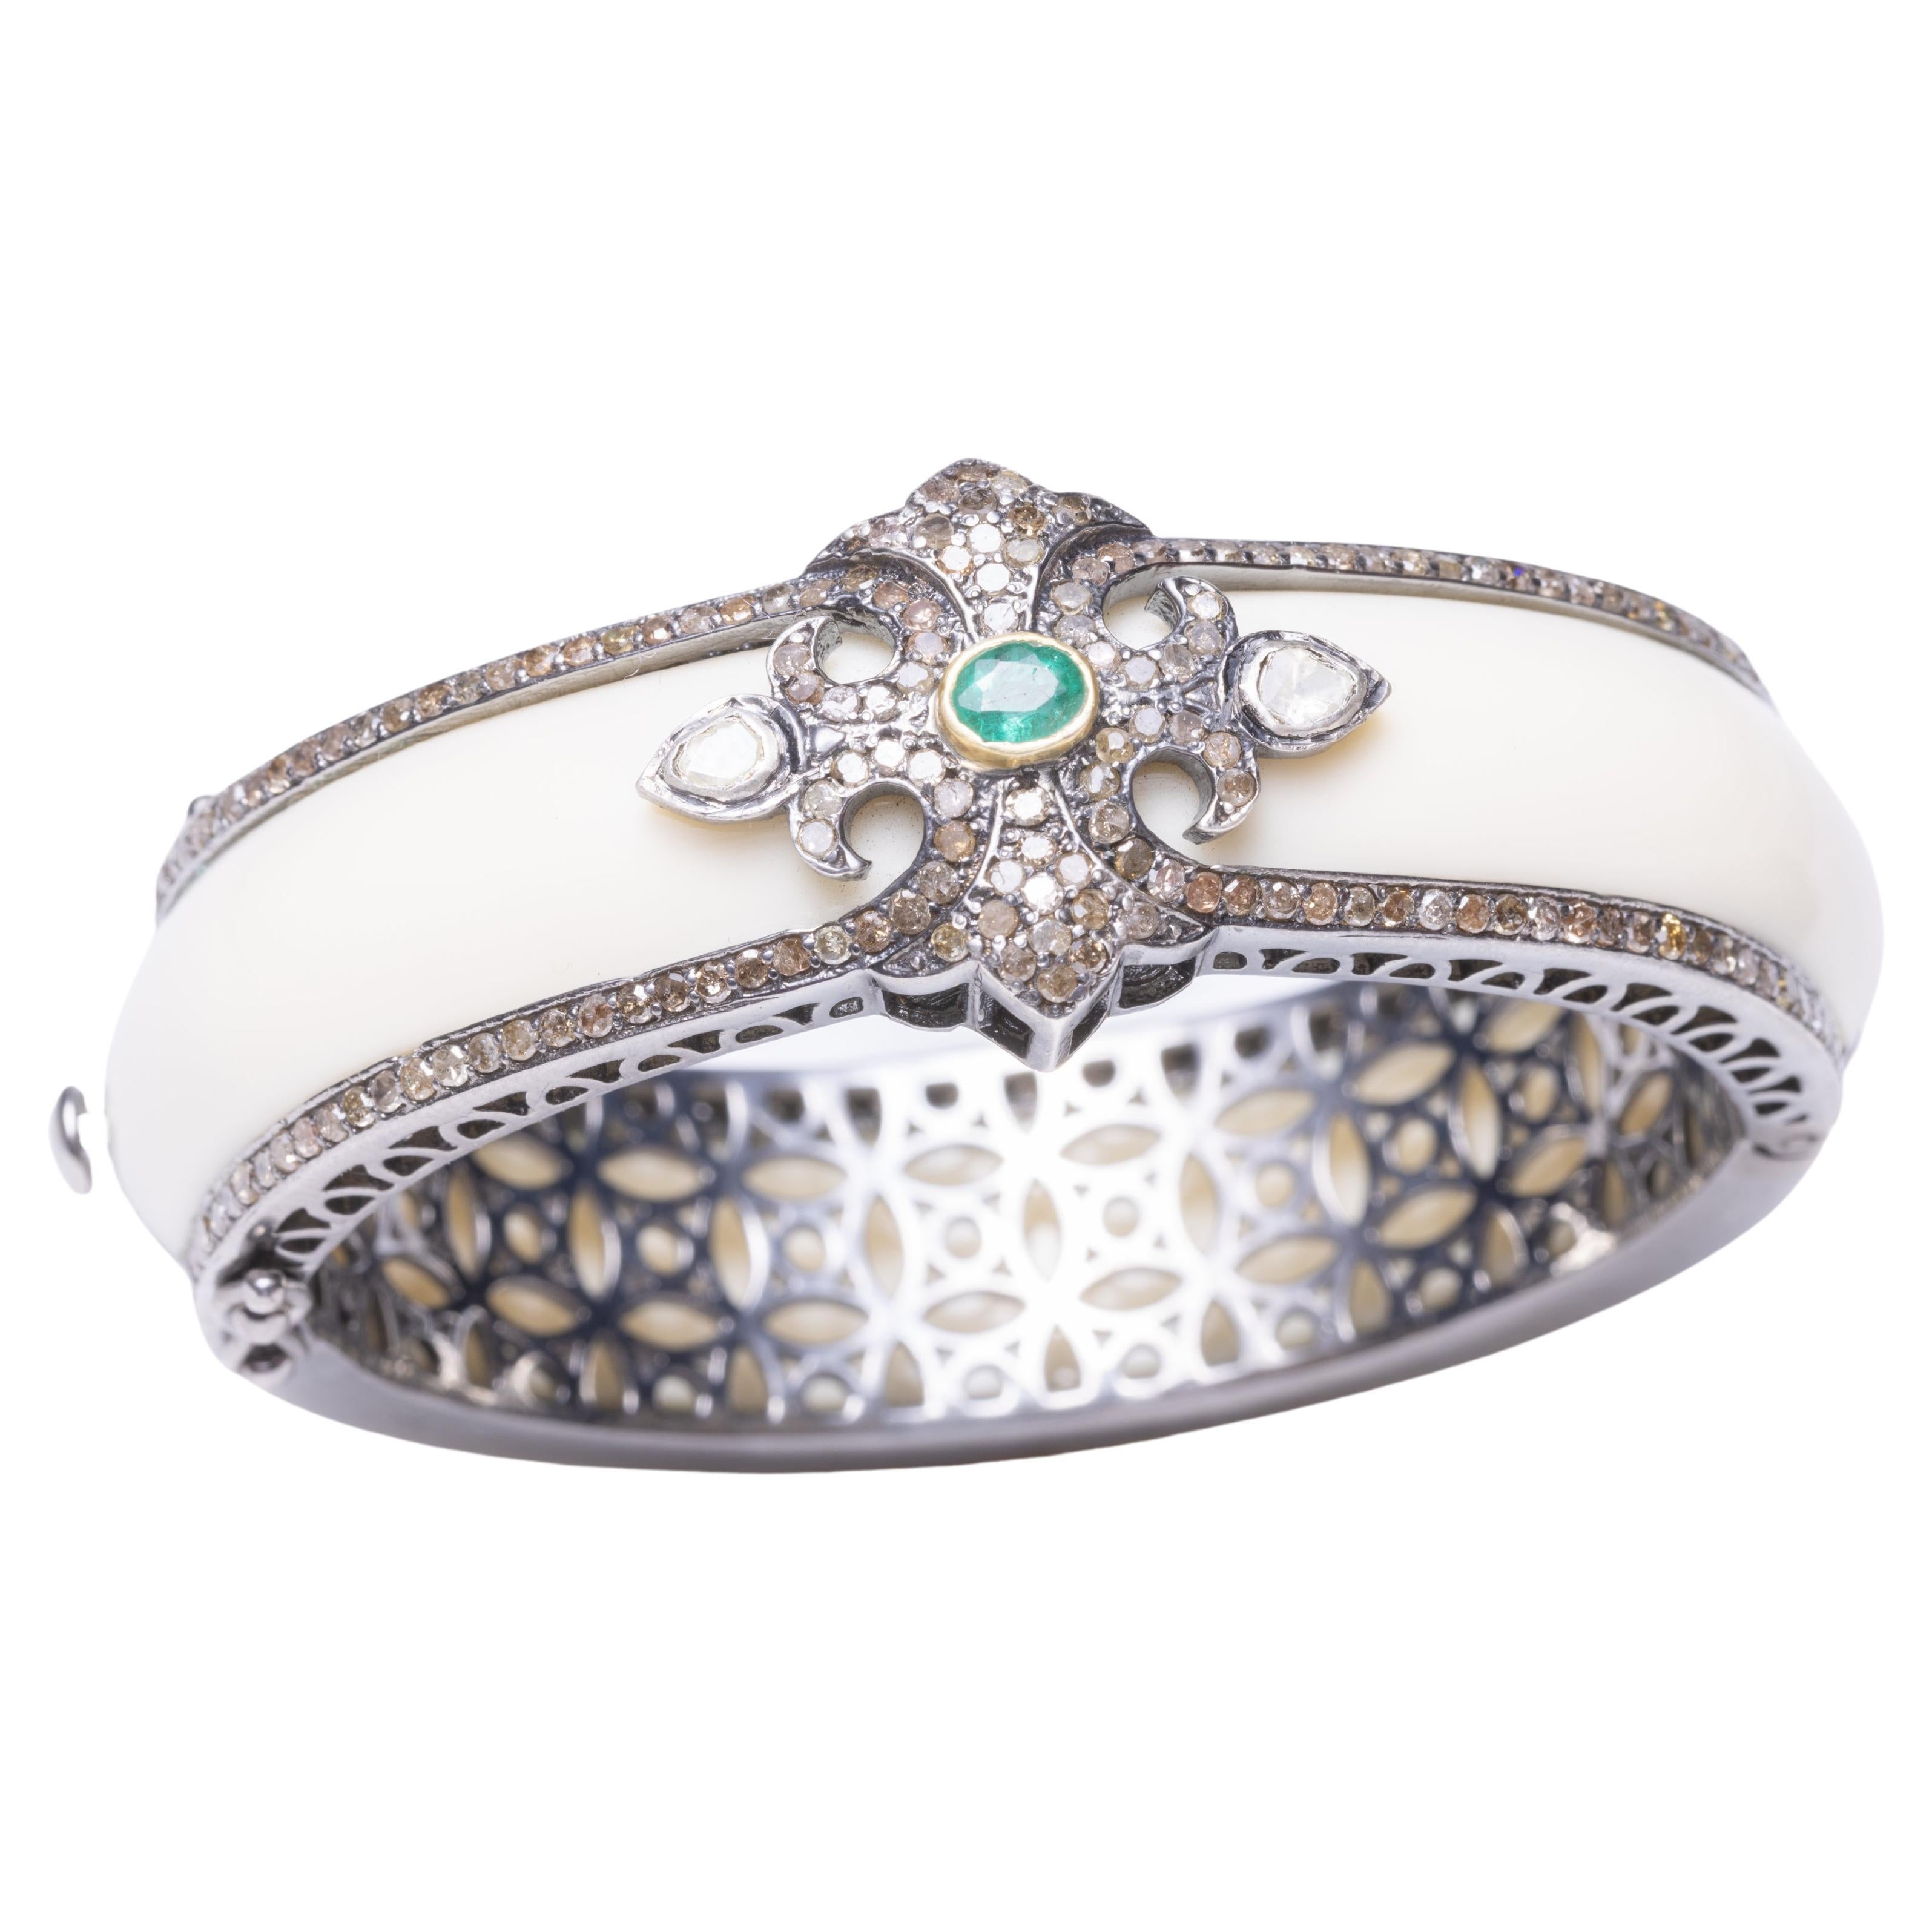 Ein wunderschönes Manschettenarmband aus weißem Bakelit, das auf beiden Seiten mit Diamanten in Pave`-Fassung eingefasst ist.  Auf der Oberseite befinden sich zusätzliche Diamanten in Pave`-Fassung mit einem ovalen, facettierten Smaragd und zwei